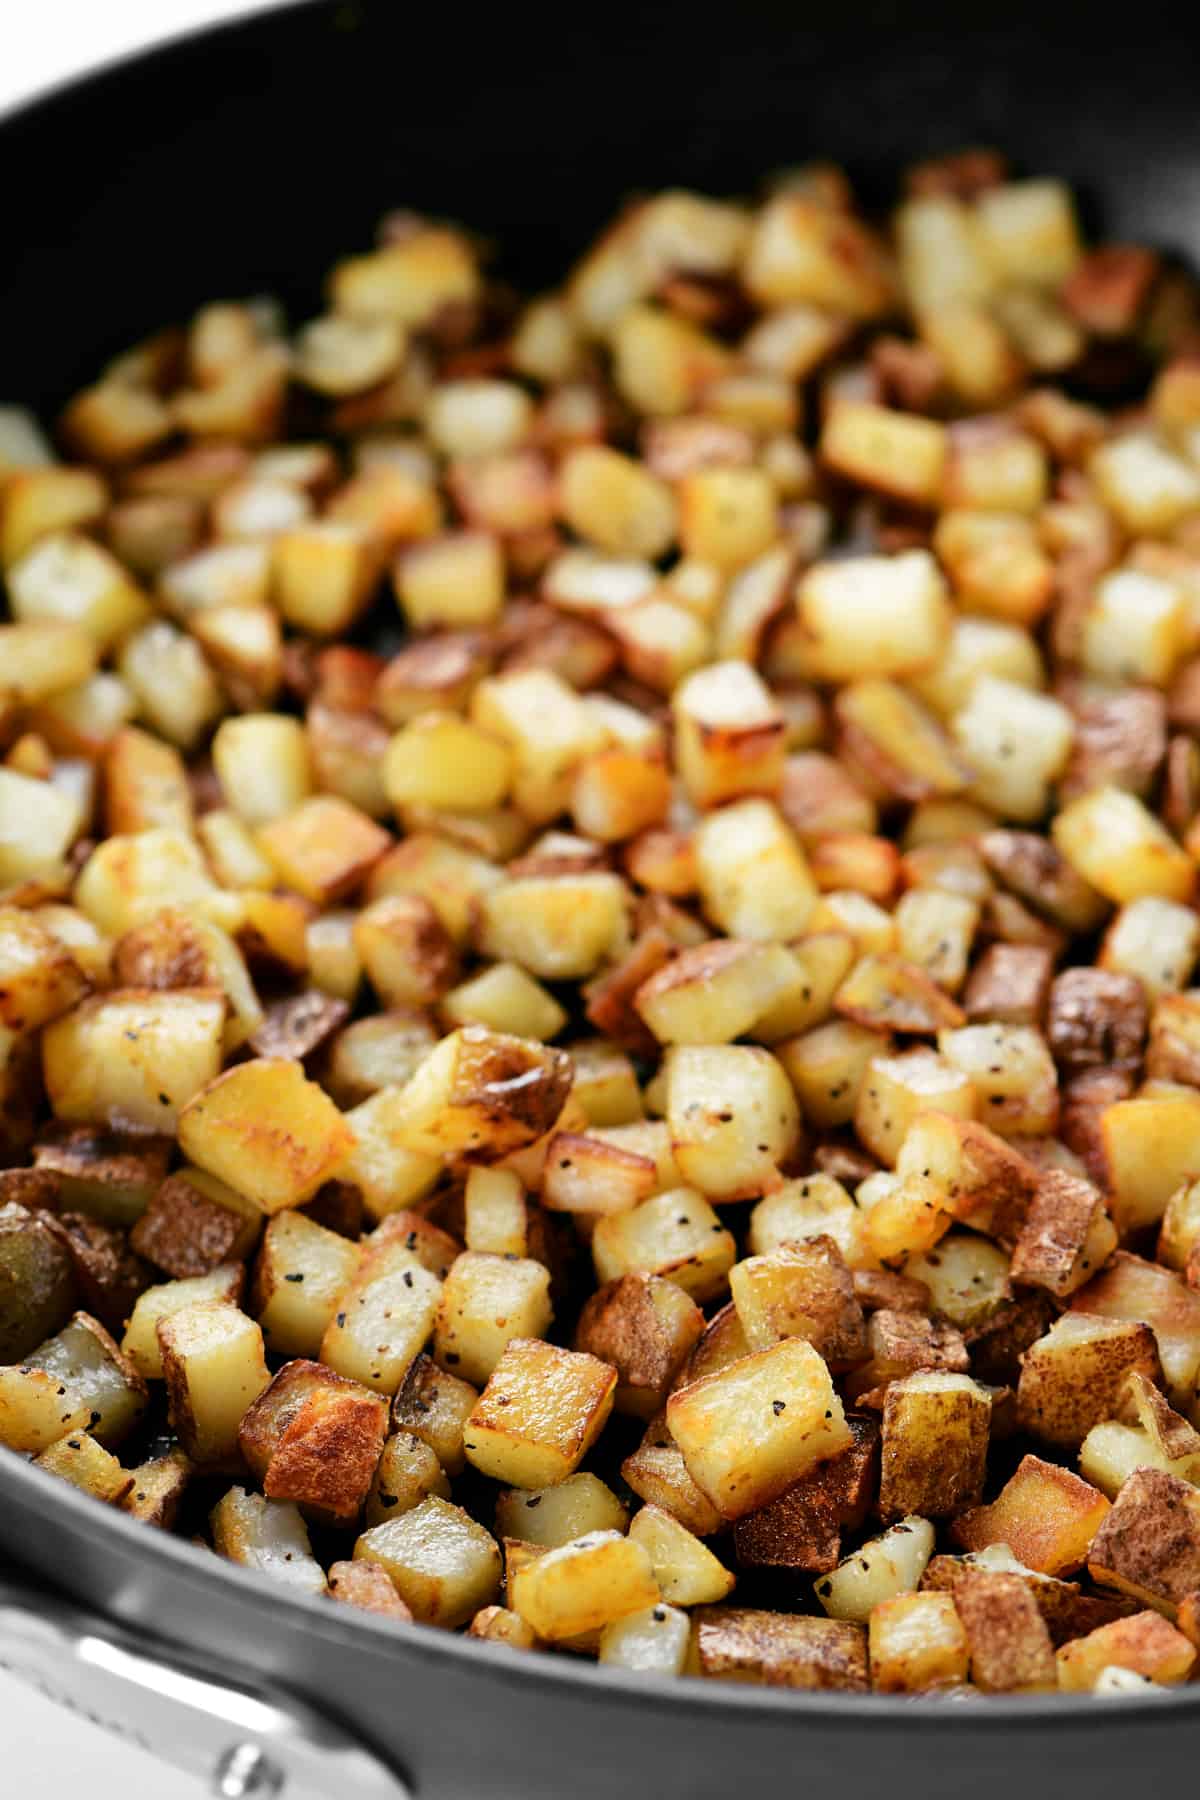 breakfast potatoes in a frying pan.